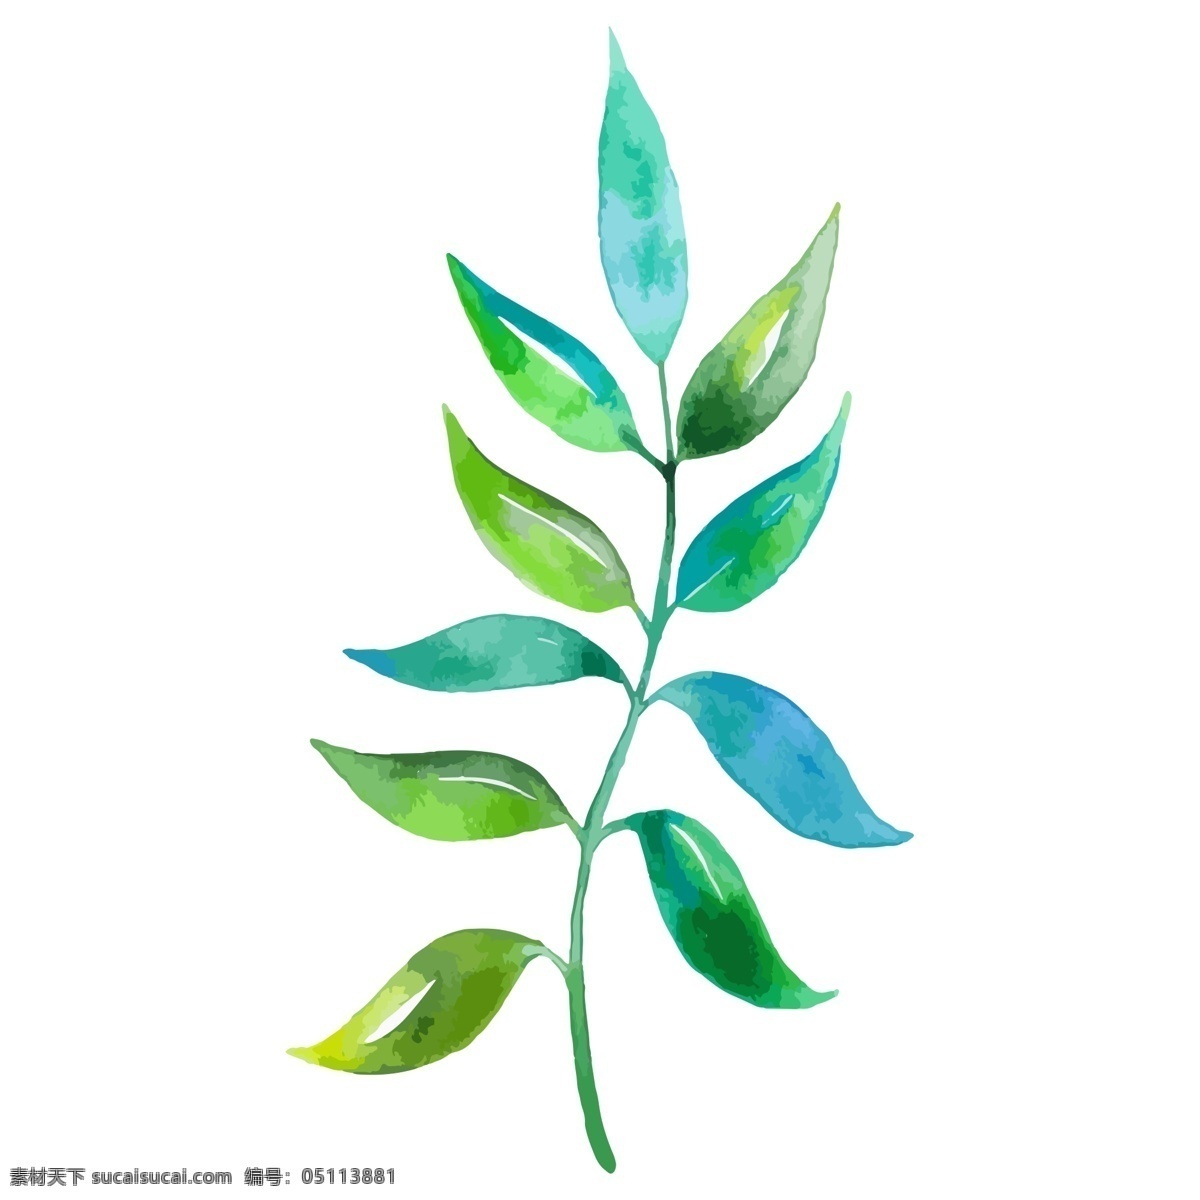 绿色 树叶子 植物 免 抠 图 生态植物 新鲜叶子 绿色枝条 健康的颜色 植物生长 免抠图